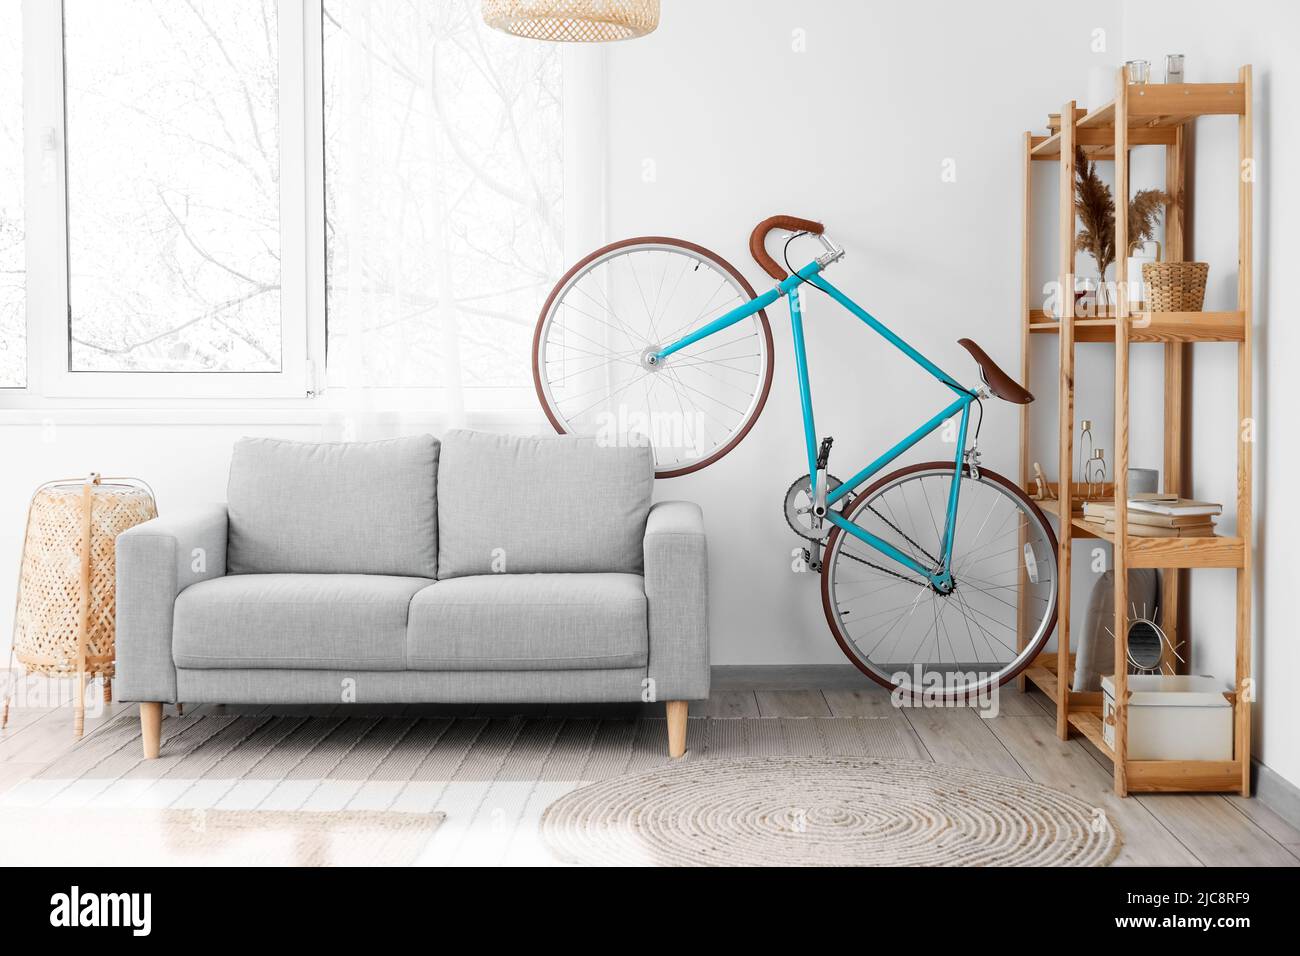 Interior de salón luminoso con bicicleta, sofá gris y estantería de madera  Fotografía de stock - Alamy